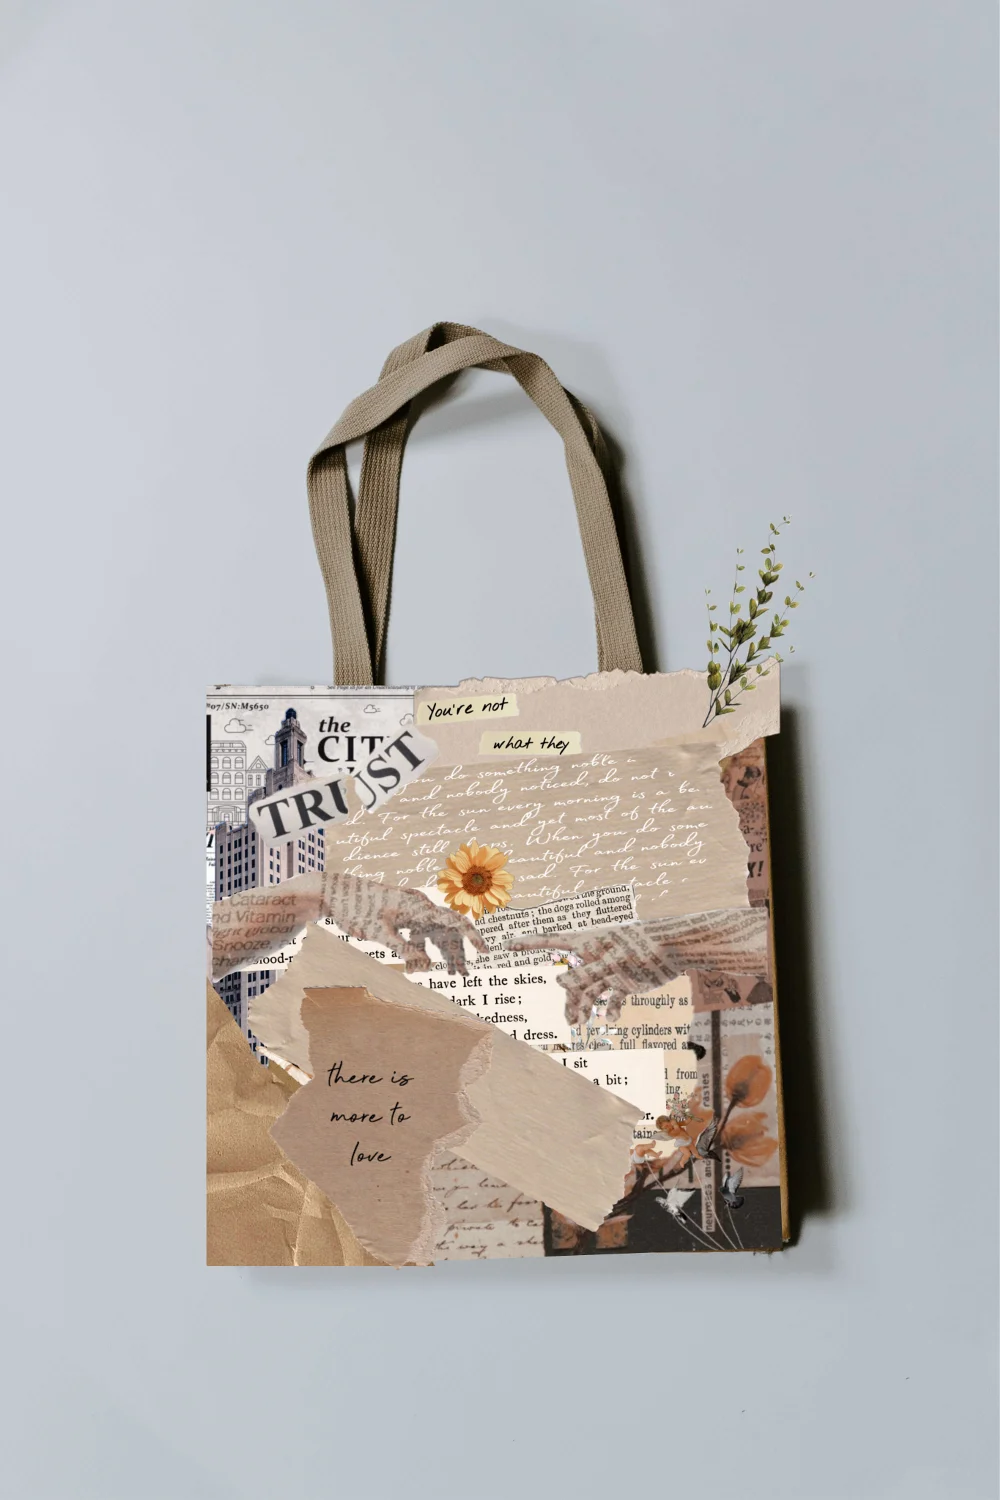 #vintage #bag #newspaper #competition